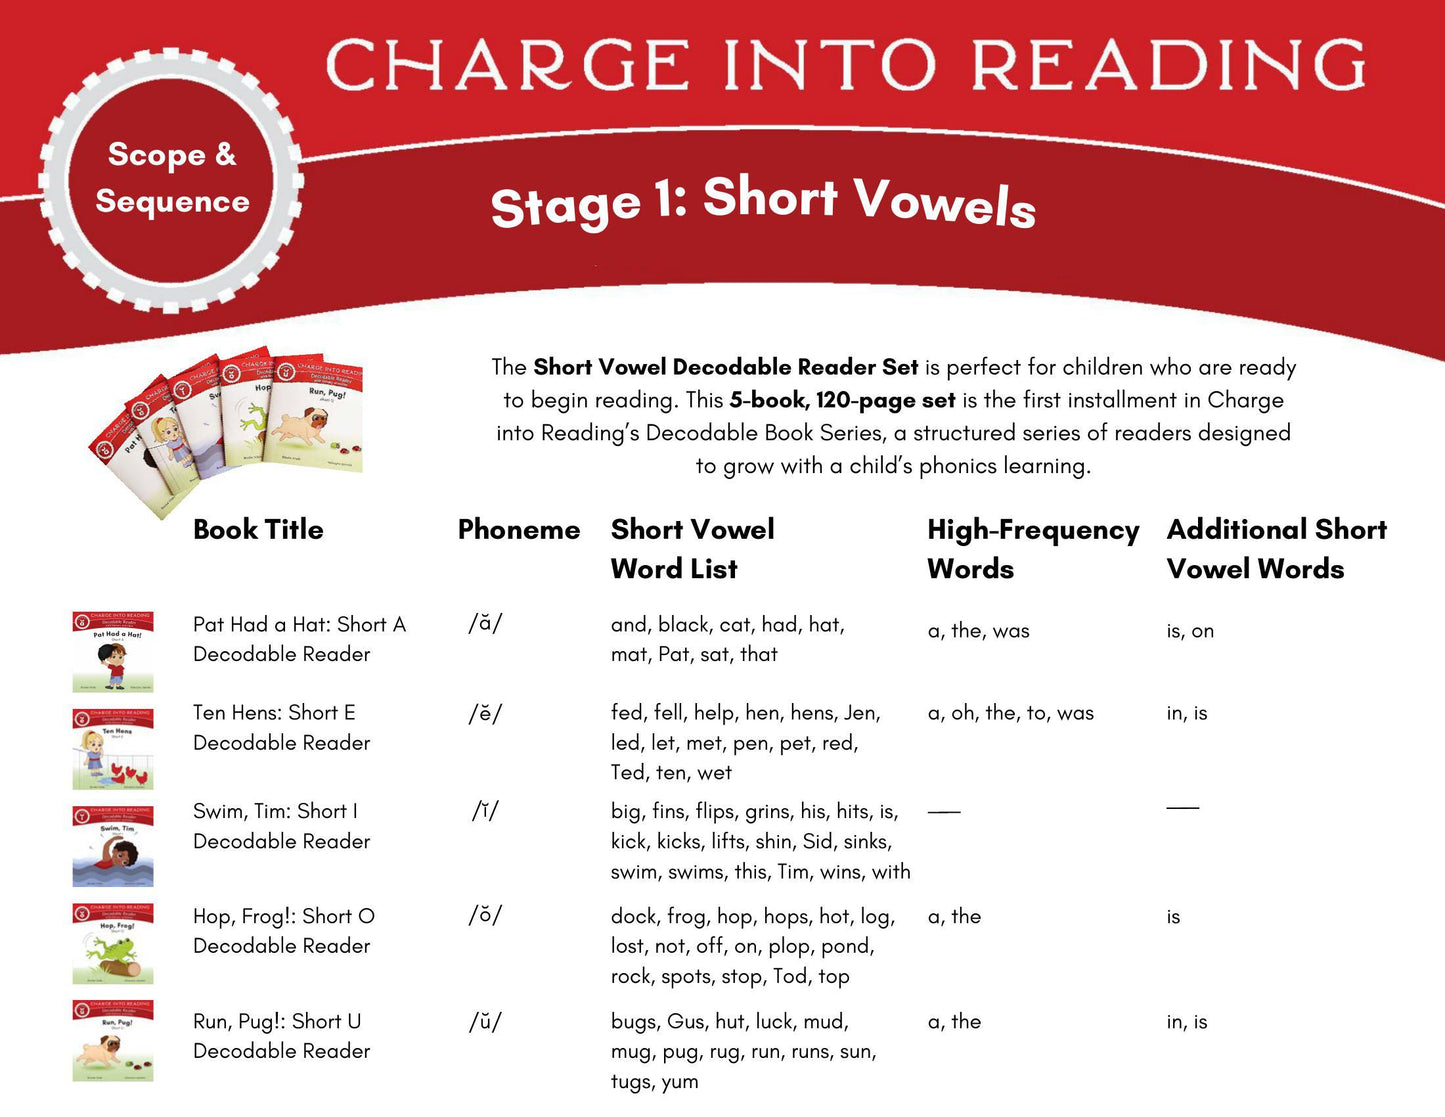 Stage 1: Short Vowel Decodable Reader Set